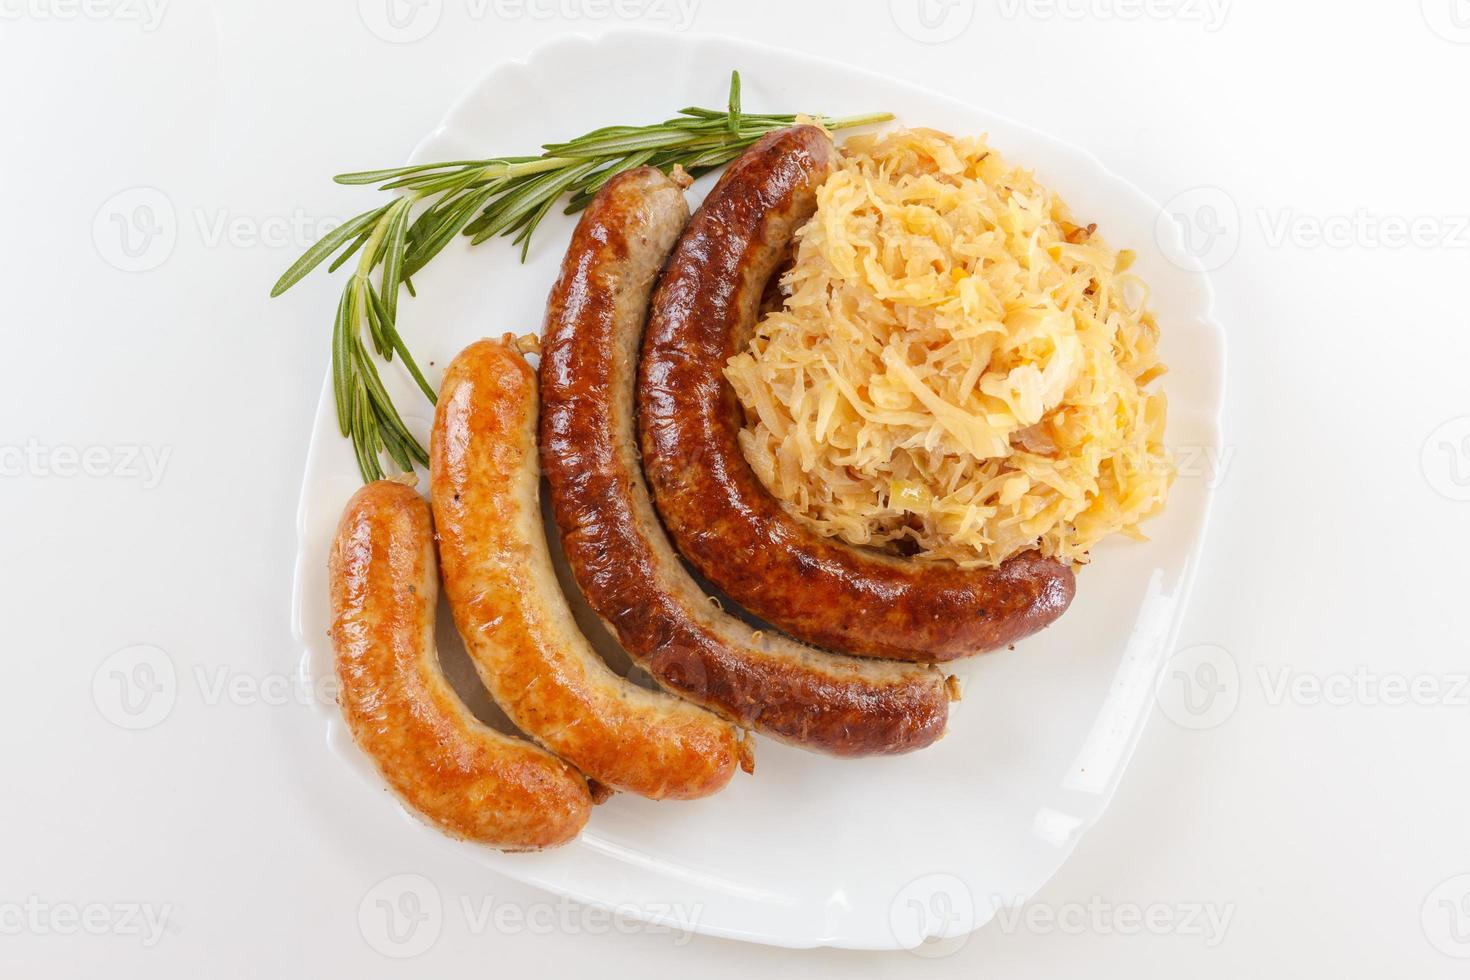 Oktoberfest menu, plate of sausages and sauerkraut photo